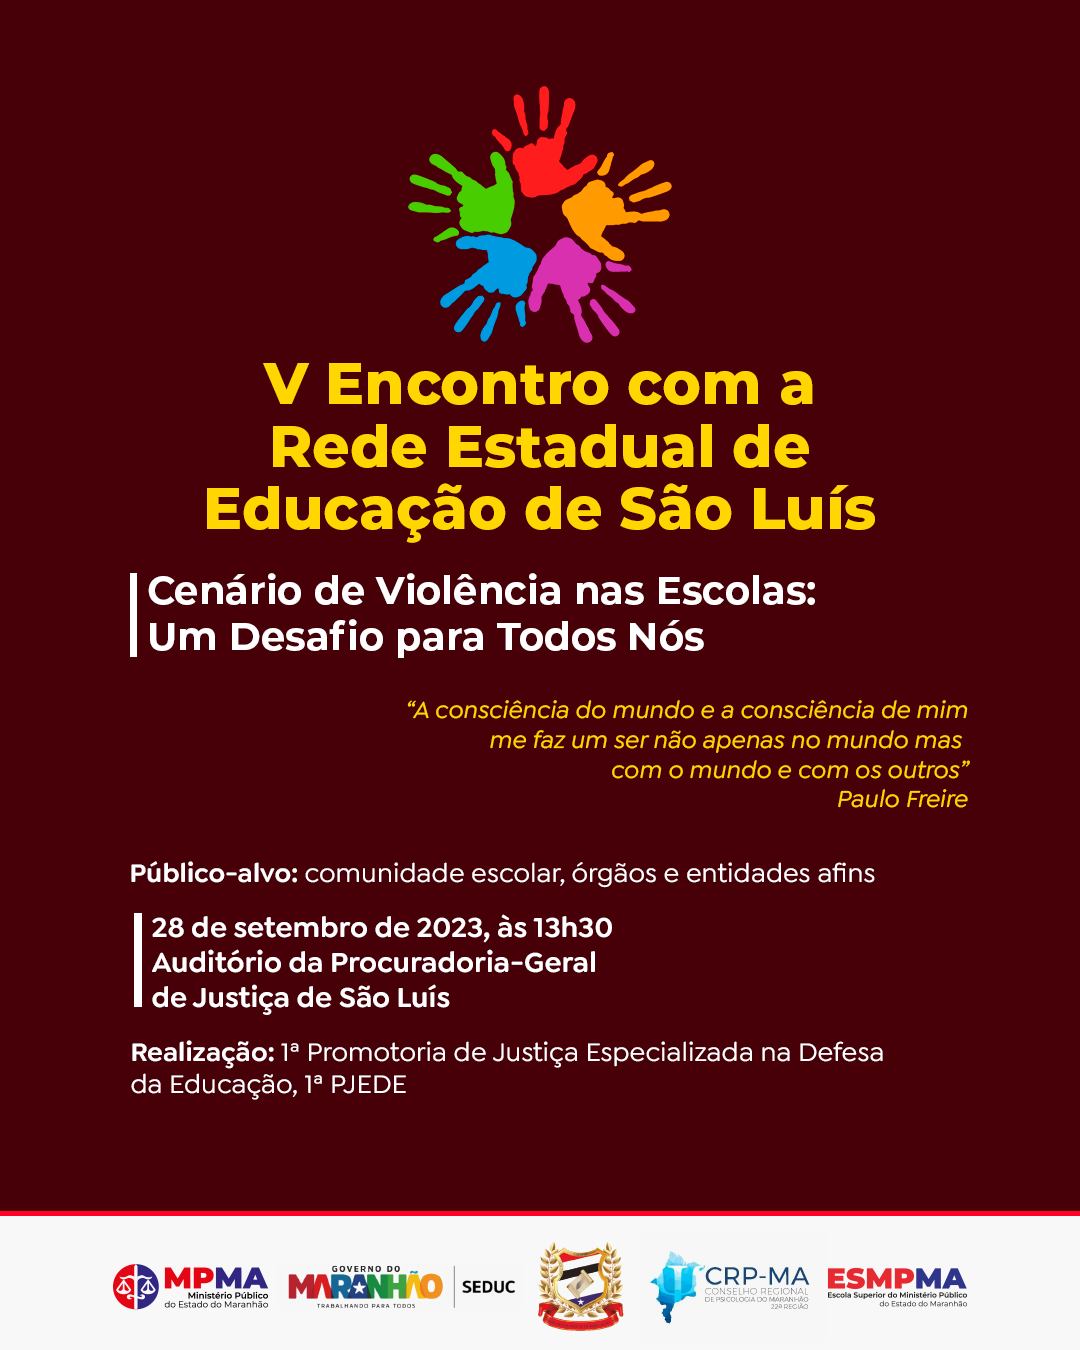 V ENCONTRO COM A REDE ESTADUAL DE EDUCAÇÃO DE SÃO LUÍS - "Cenário de Violência nas Escolas: um desafio para todos nós"